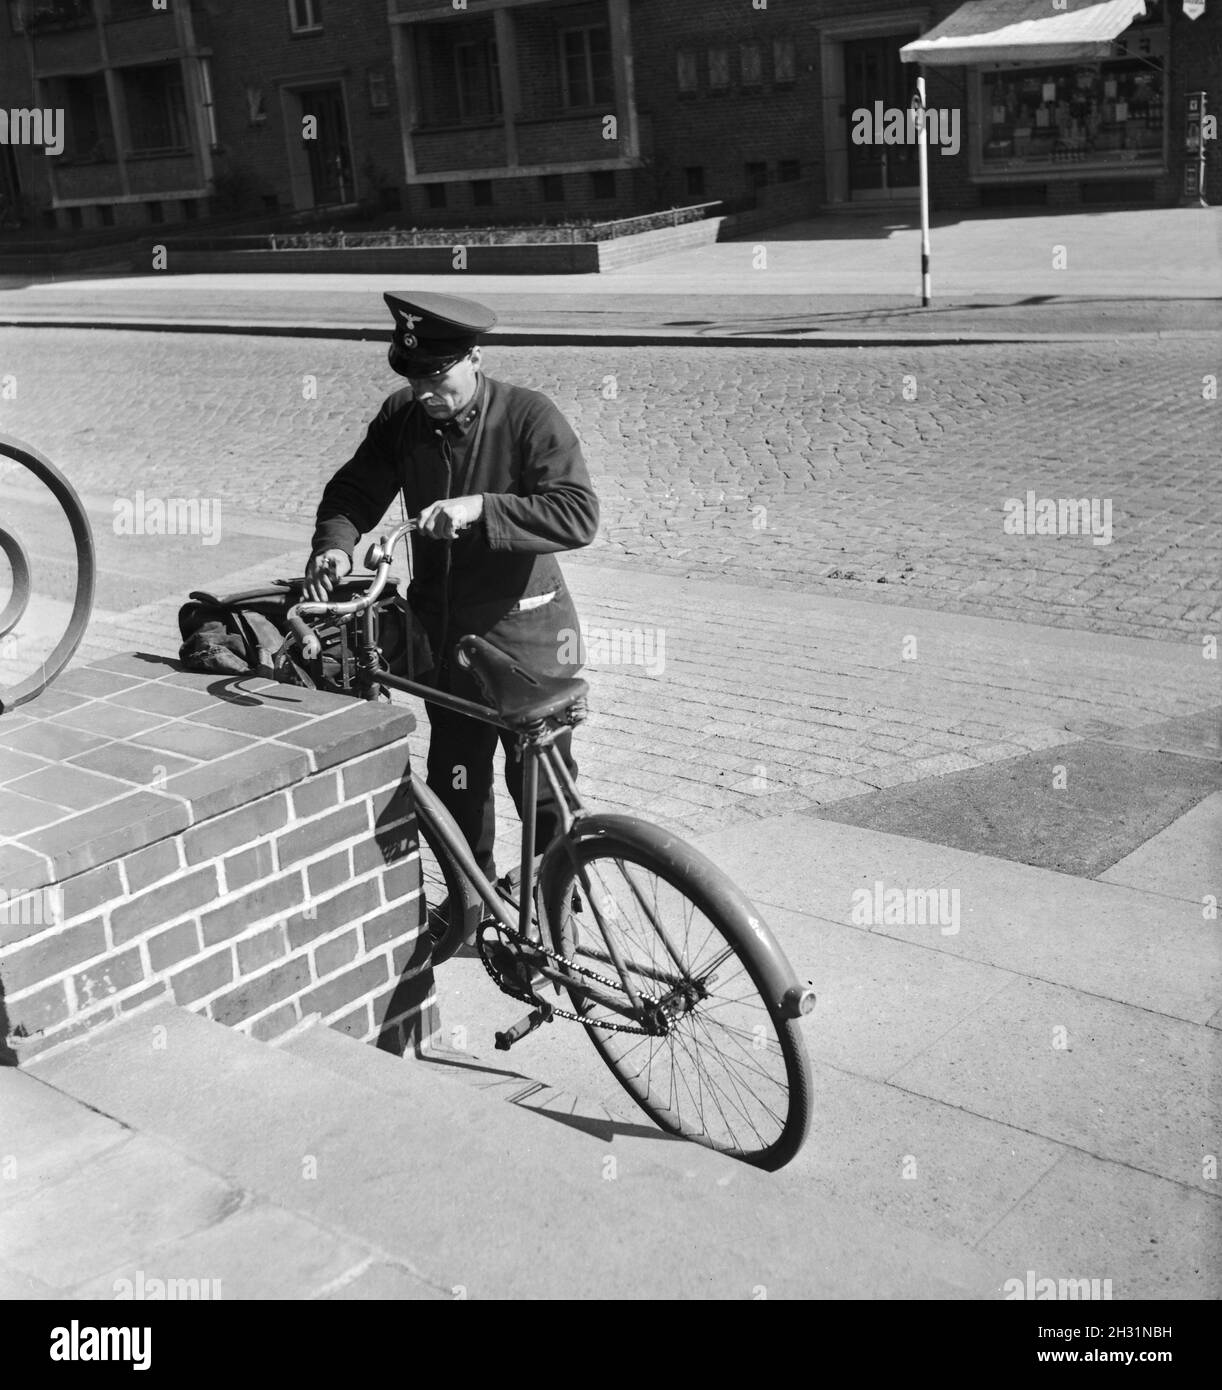 Polizeibeamter in der Fehnkolonie Woprswede mit Fahrrad, Deutsches Reich 1930er. Police officer in Fehnkolonie Woprswede with bicycle, German Empire 1930s. Stock Photo